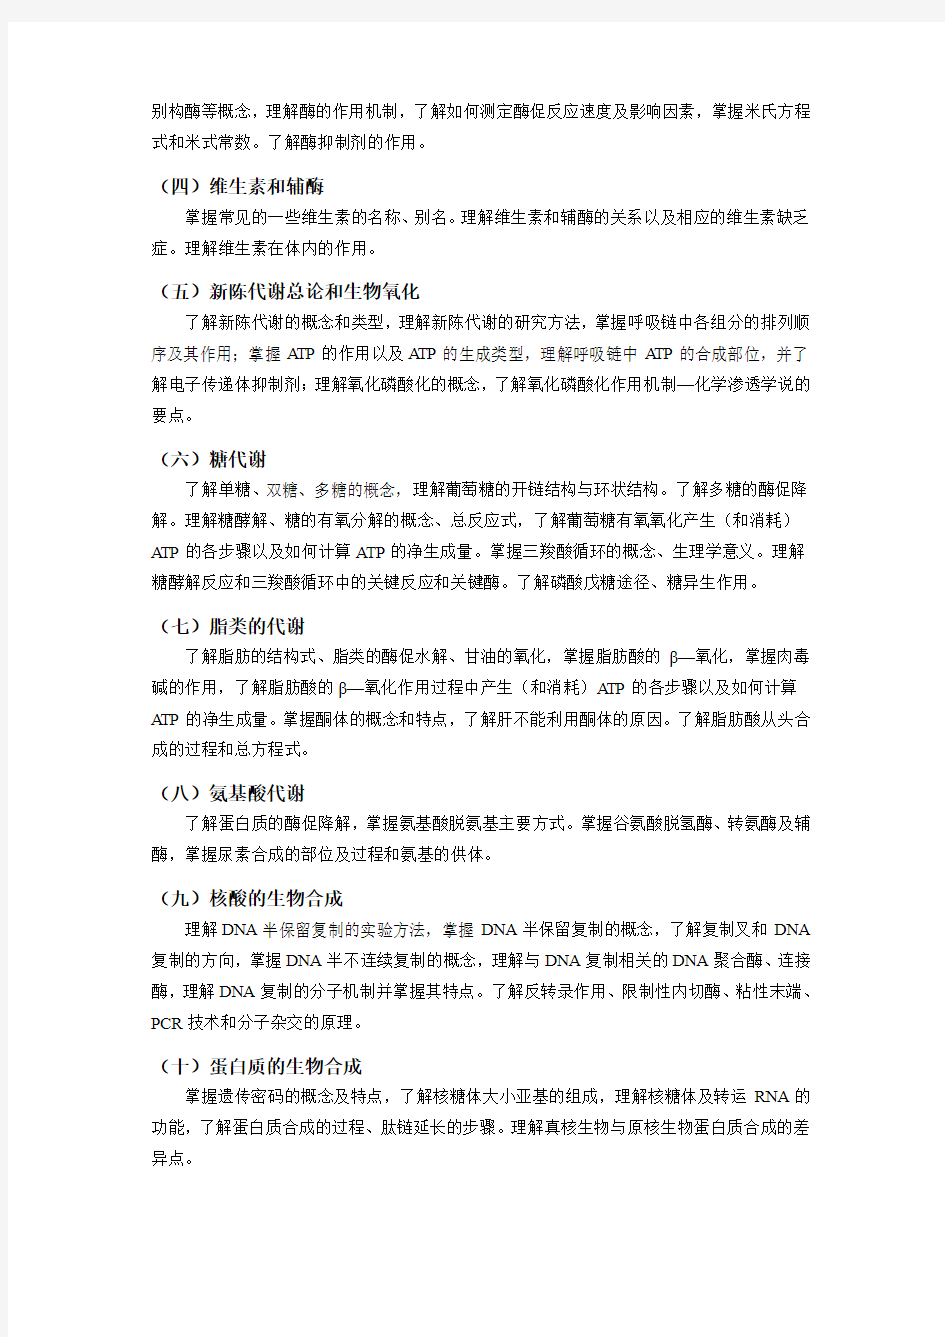 北京化工大学 670药学综合一考试大纲 硕士研究生考研入学考试